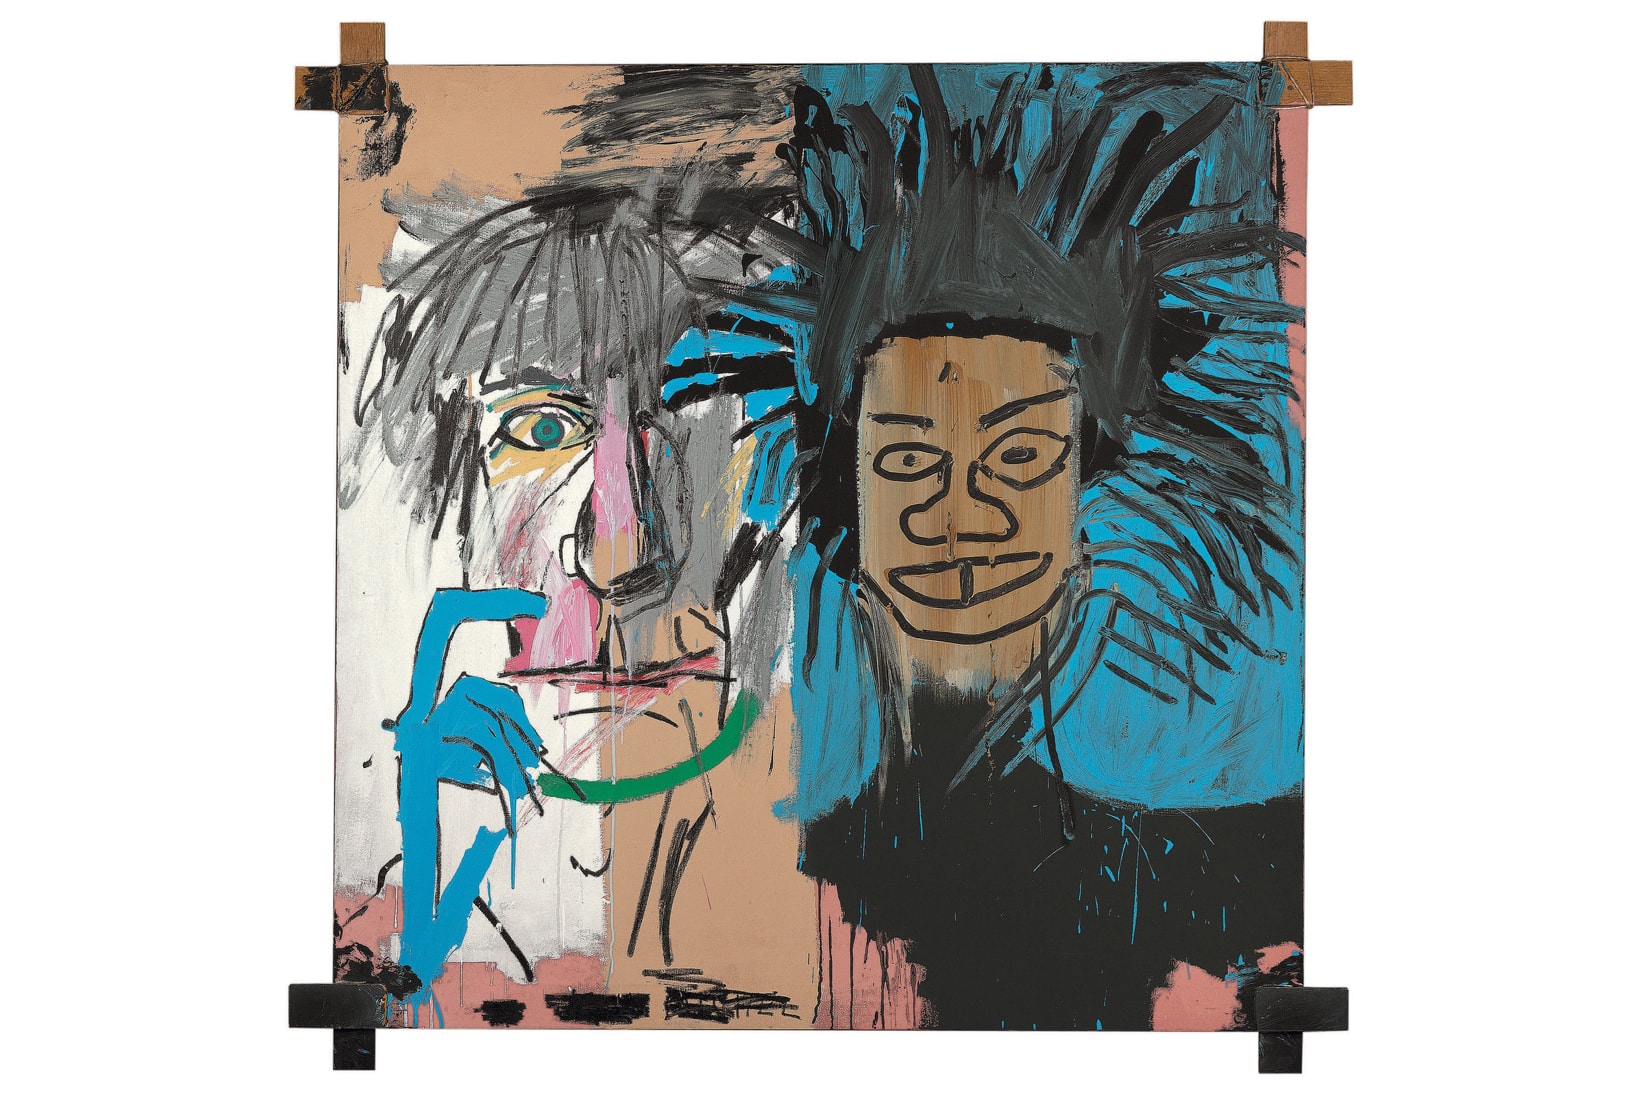 Louis Vuitton 主宰の現代アート美術館にてジャン＝ミシェル・バスキアの回顧展を開催 ポップアートの旗手と称されるアンディ・ウォーホルとのコラボ作品を含む、全120作品を展示予定　Fondation Louis Vuitton フォンダシオン ルイ・ヴィトン Jean-Michel Basquiat ジャン＝ミシェル・バスキア 回顧展 1980 1988 120作品 Andy Warhol アンディ・ウォーホル 10月3日 2019年1月14日 HYPEBEAST ハイプビースト